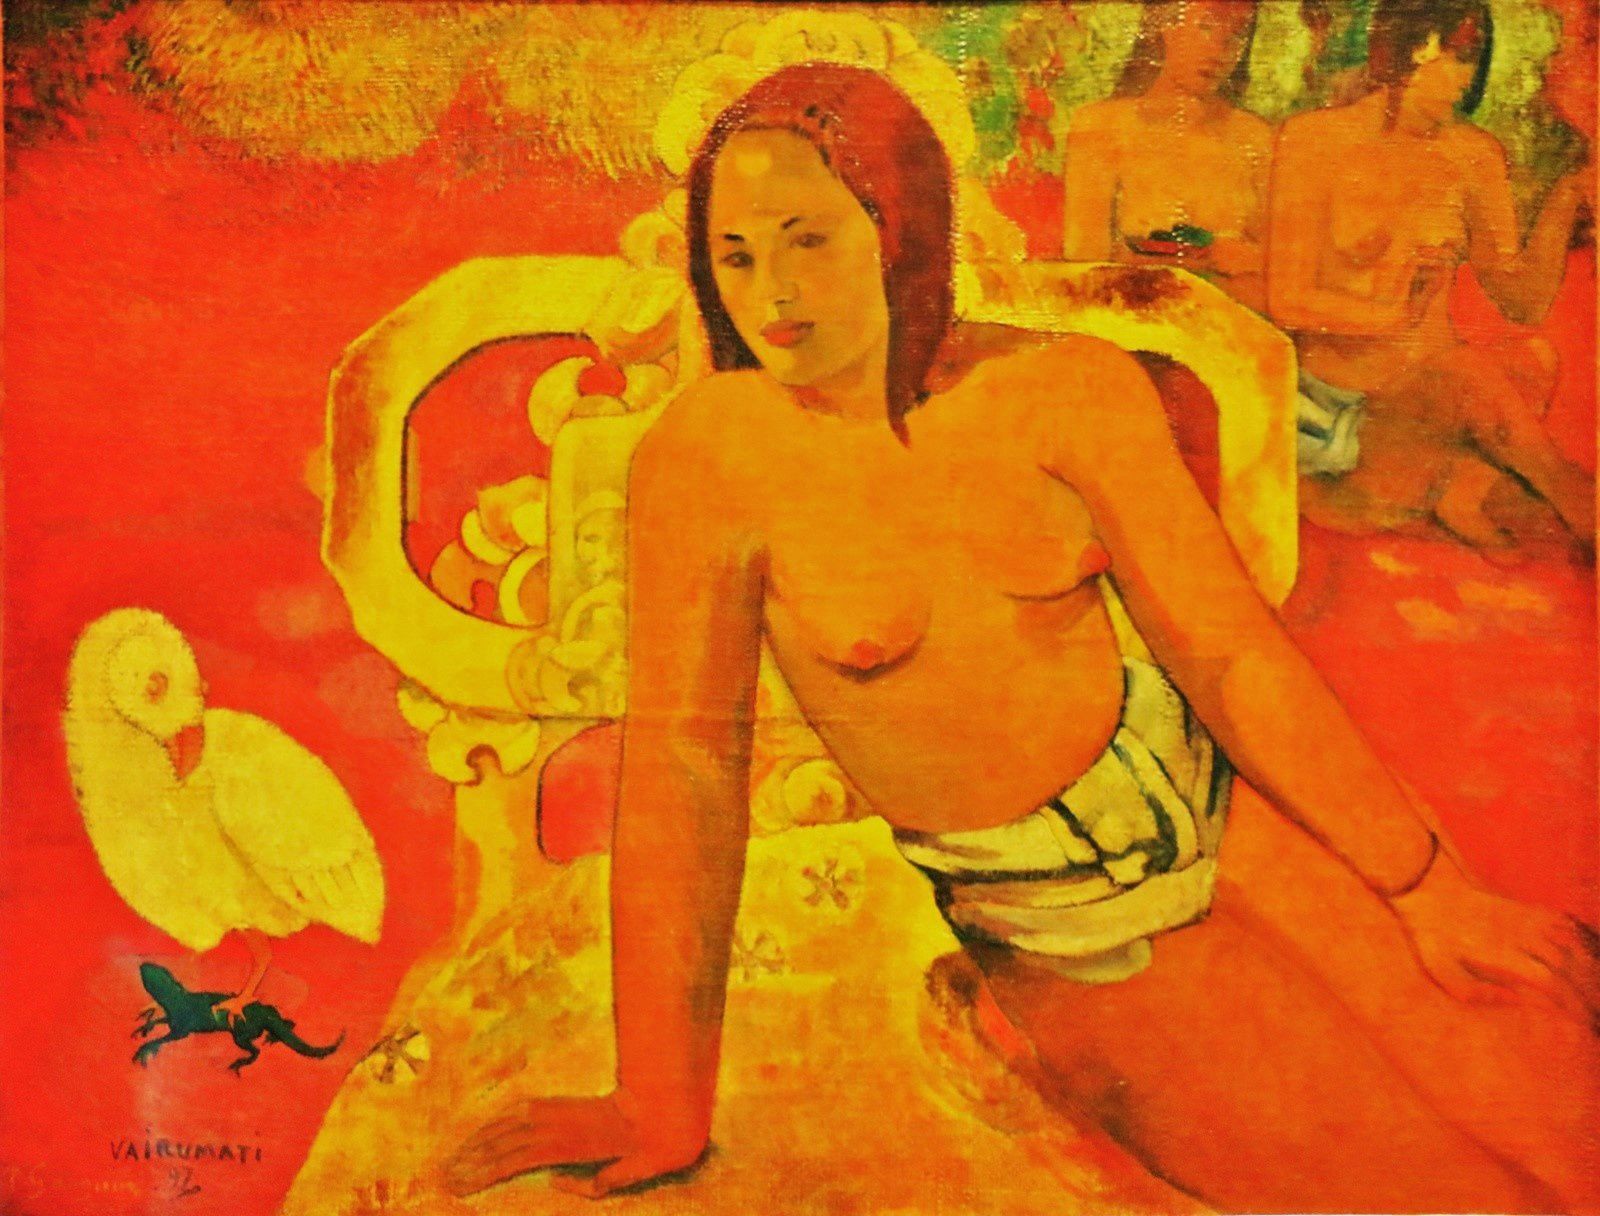 Paul Gauguin, Vairumati